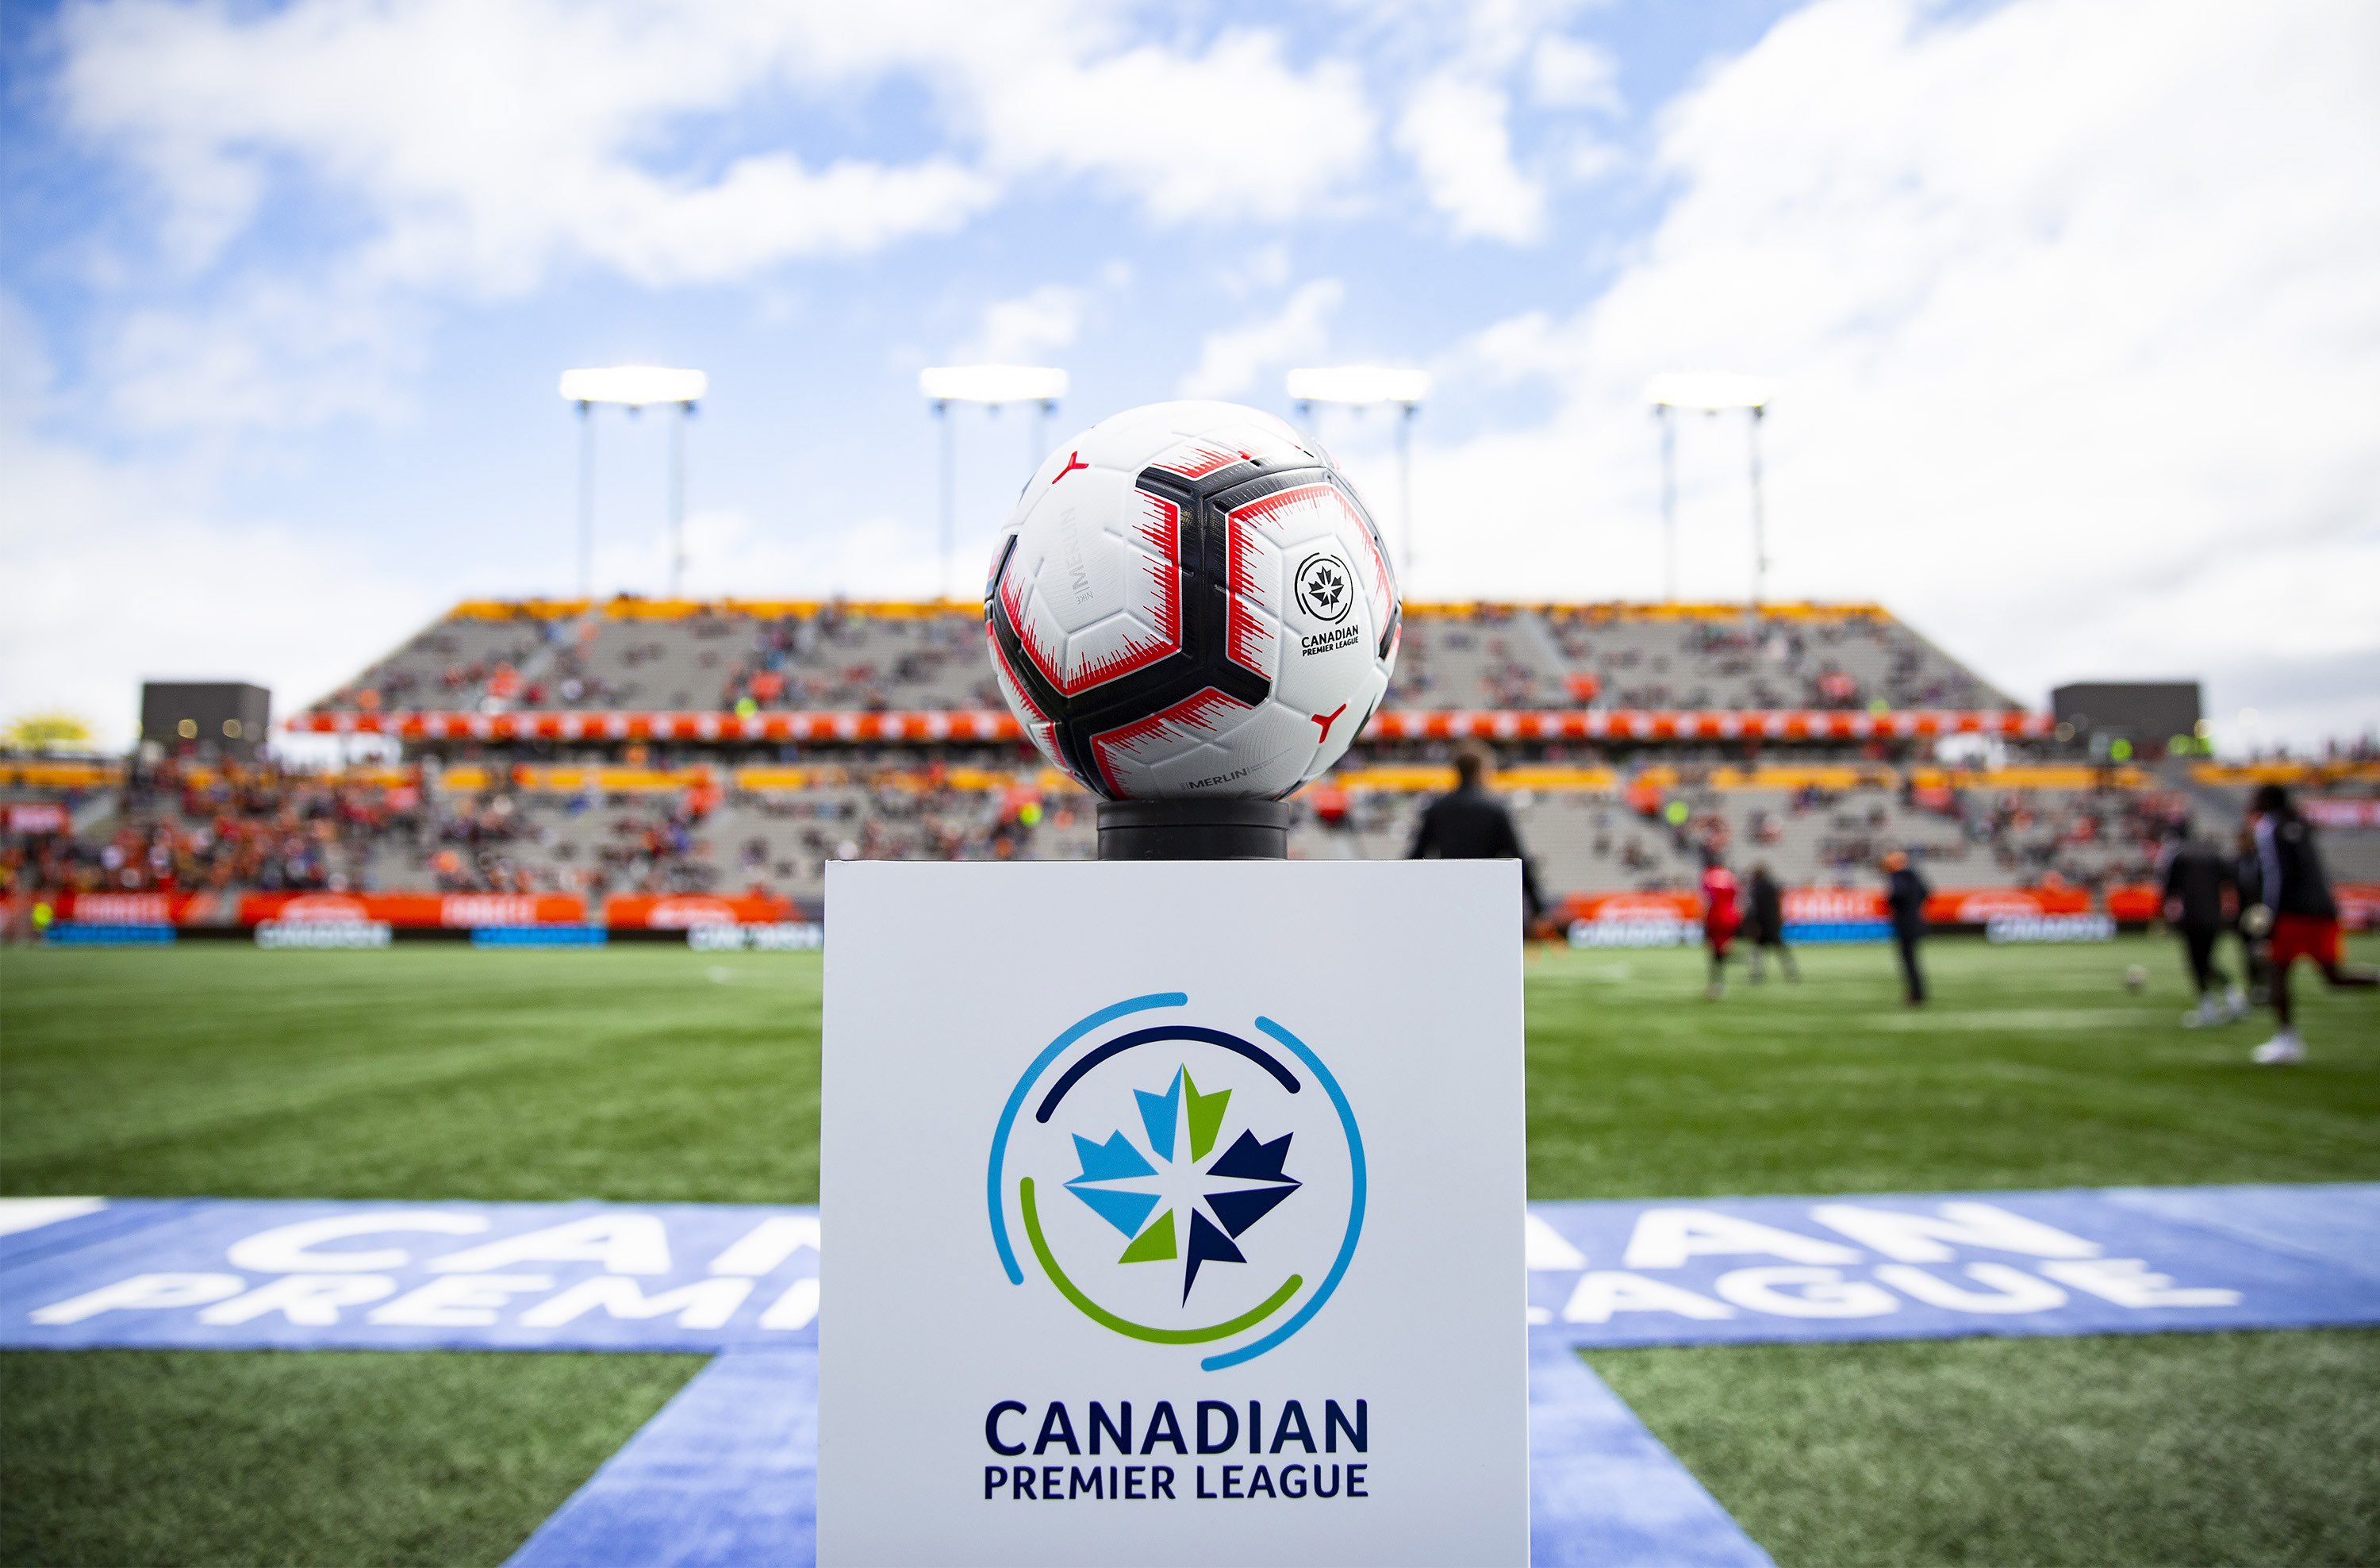 위니펙 시는 2021년 캐나다 프리미어 리그(CPL) 첫 달 안전한 경기들을 개최할 예정(6월 26일부터 7월 24일까지)